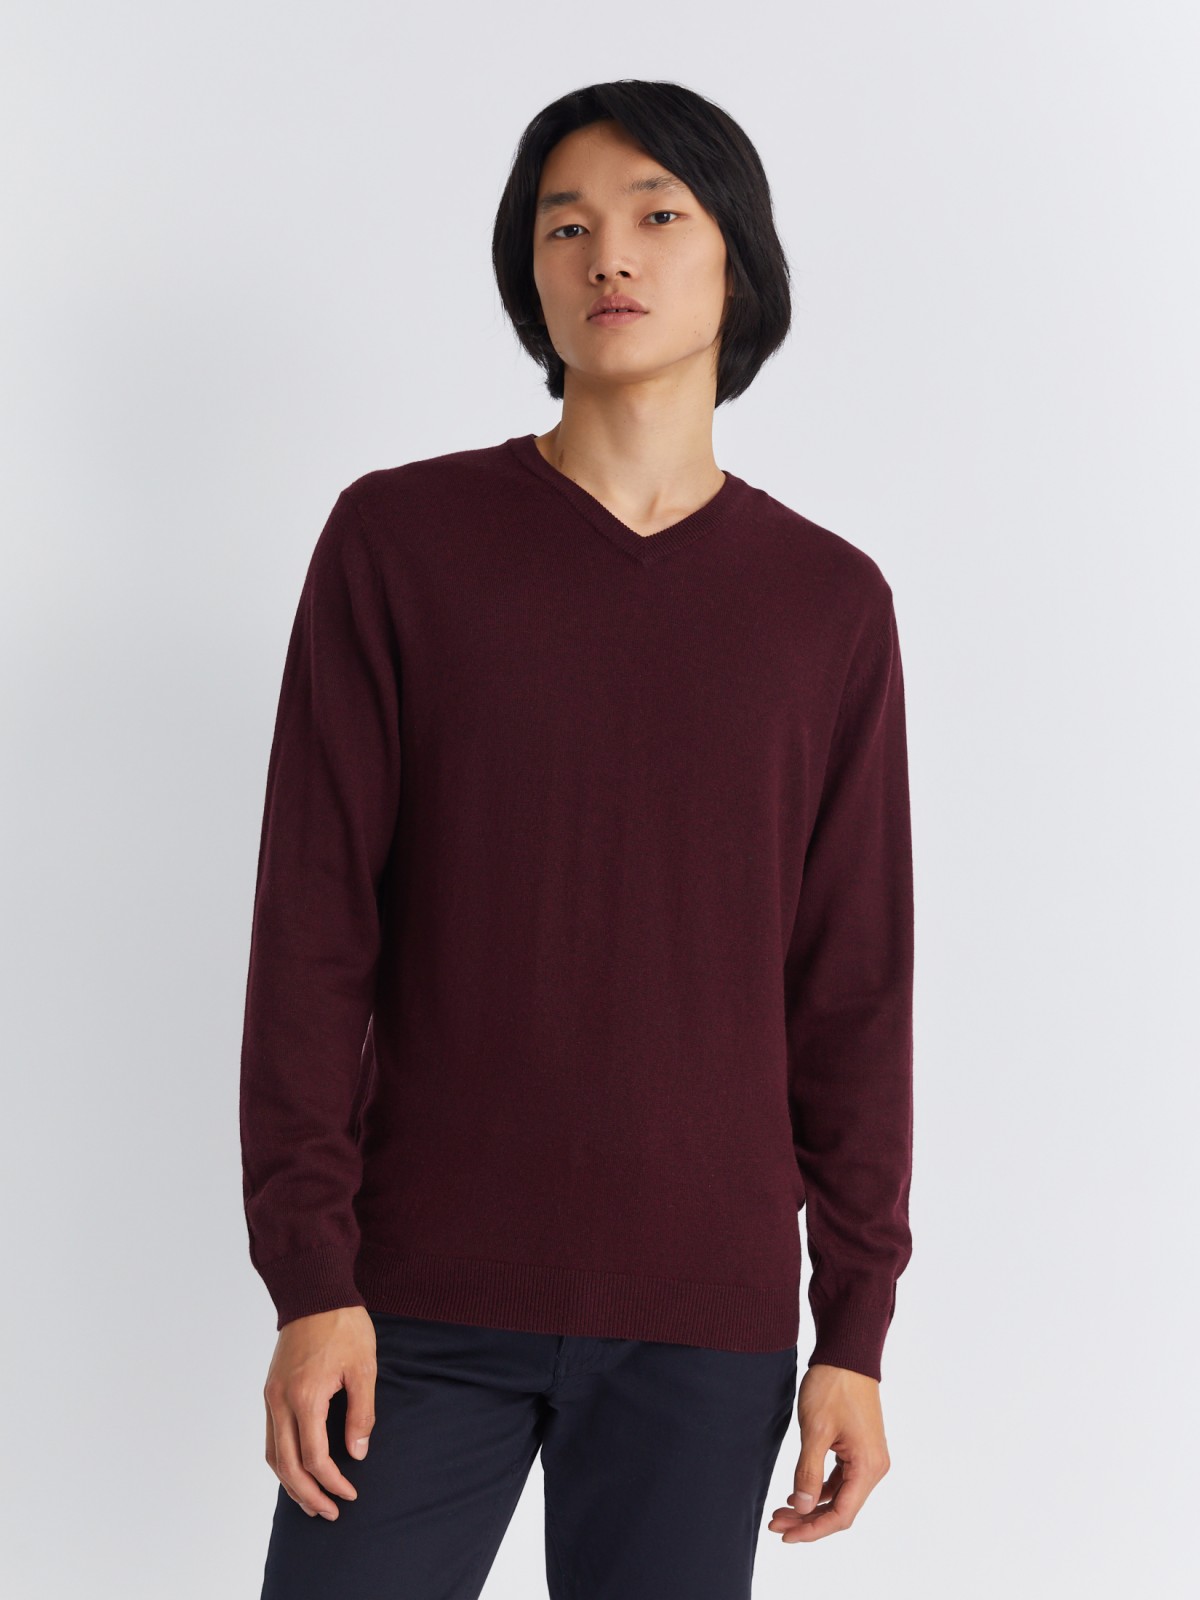 Шерстяной трикотажный пуловер с треугольным вырезом и длинным рукавом zolla 013346163042, цвет бордо, размер M - фото 3